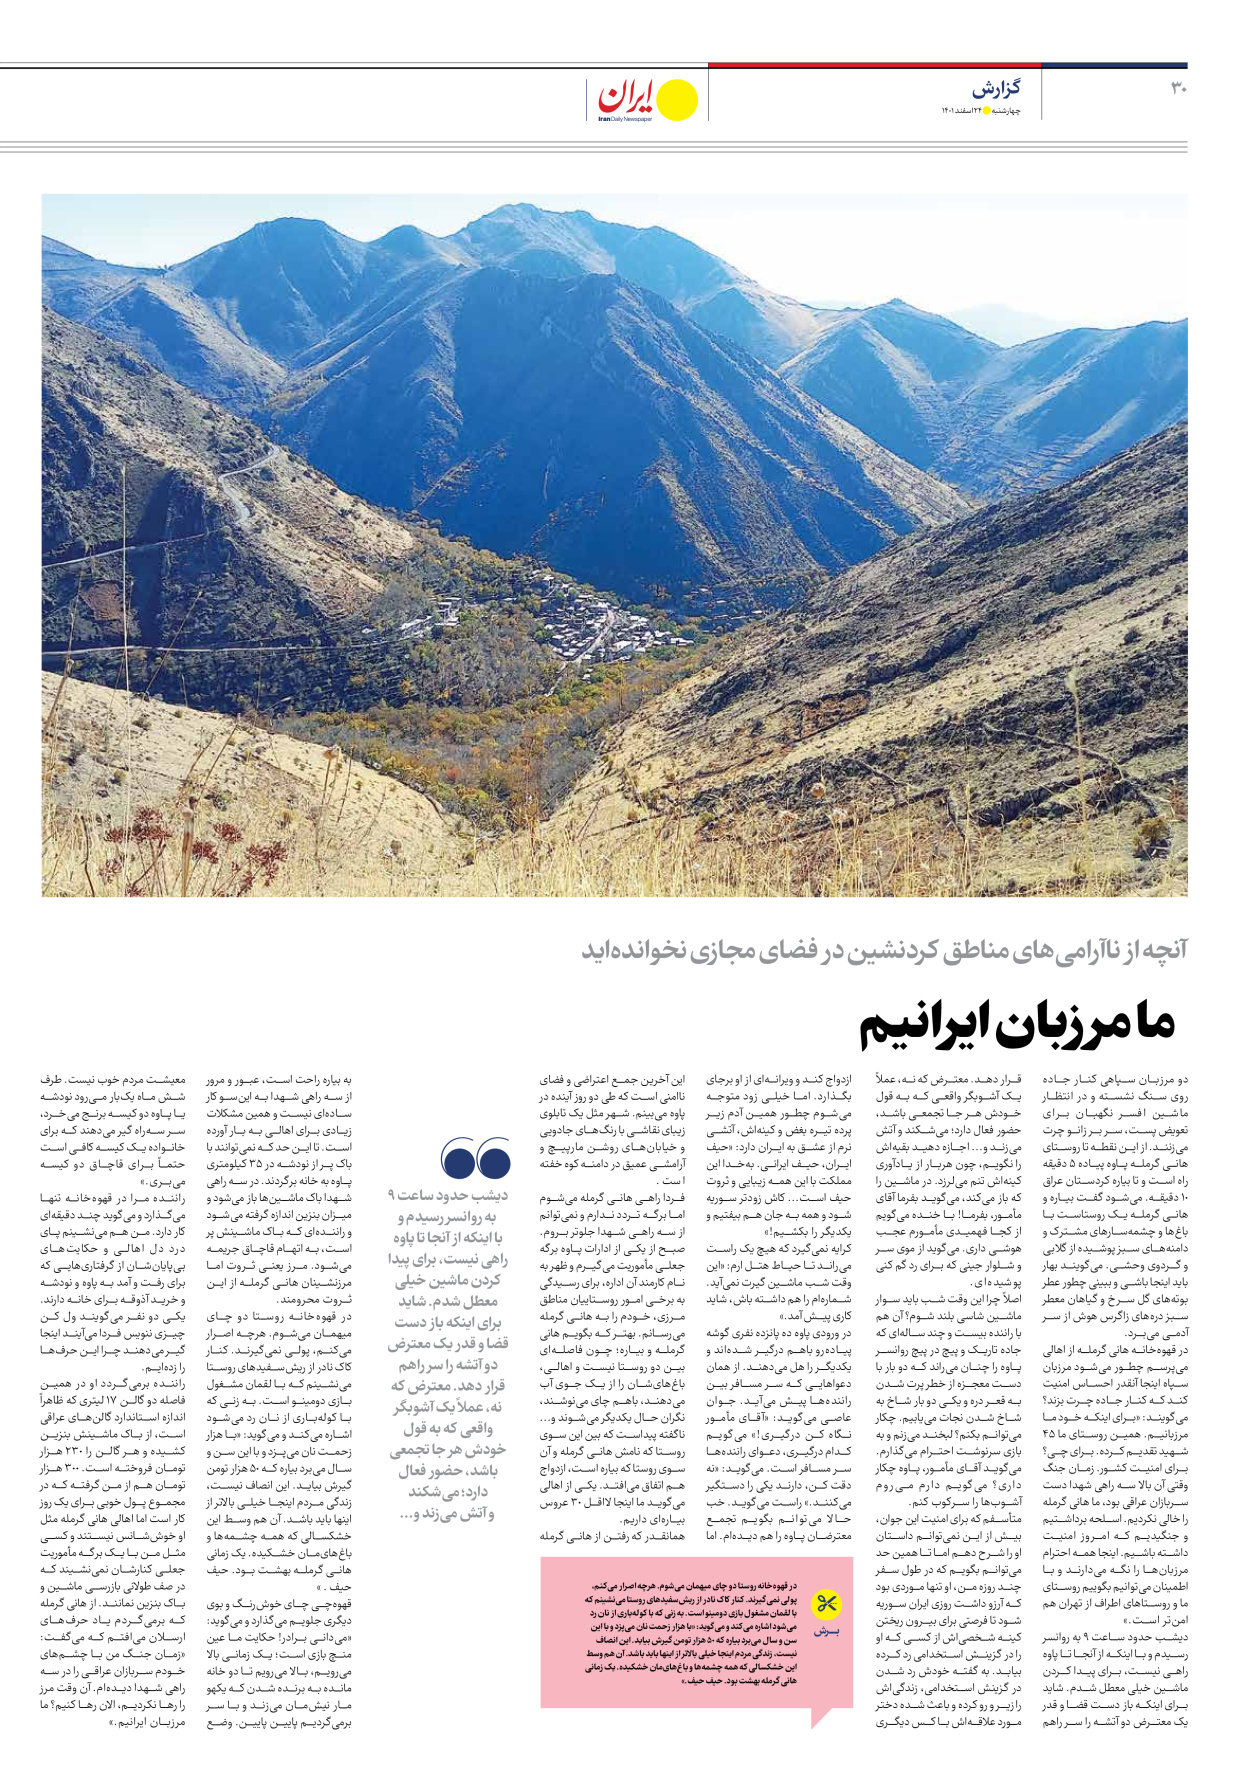 روزنامه ایران - ویژه نامه ویژه نوروز - ۲۴ اسفند ۱۴۰۱ - صفحه ۳۰